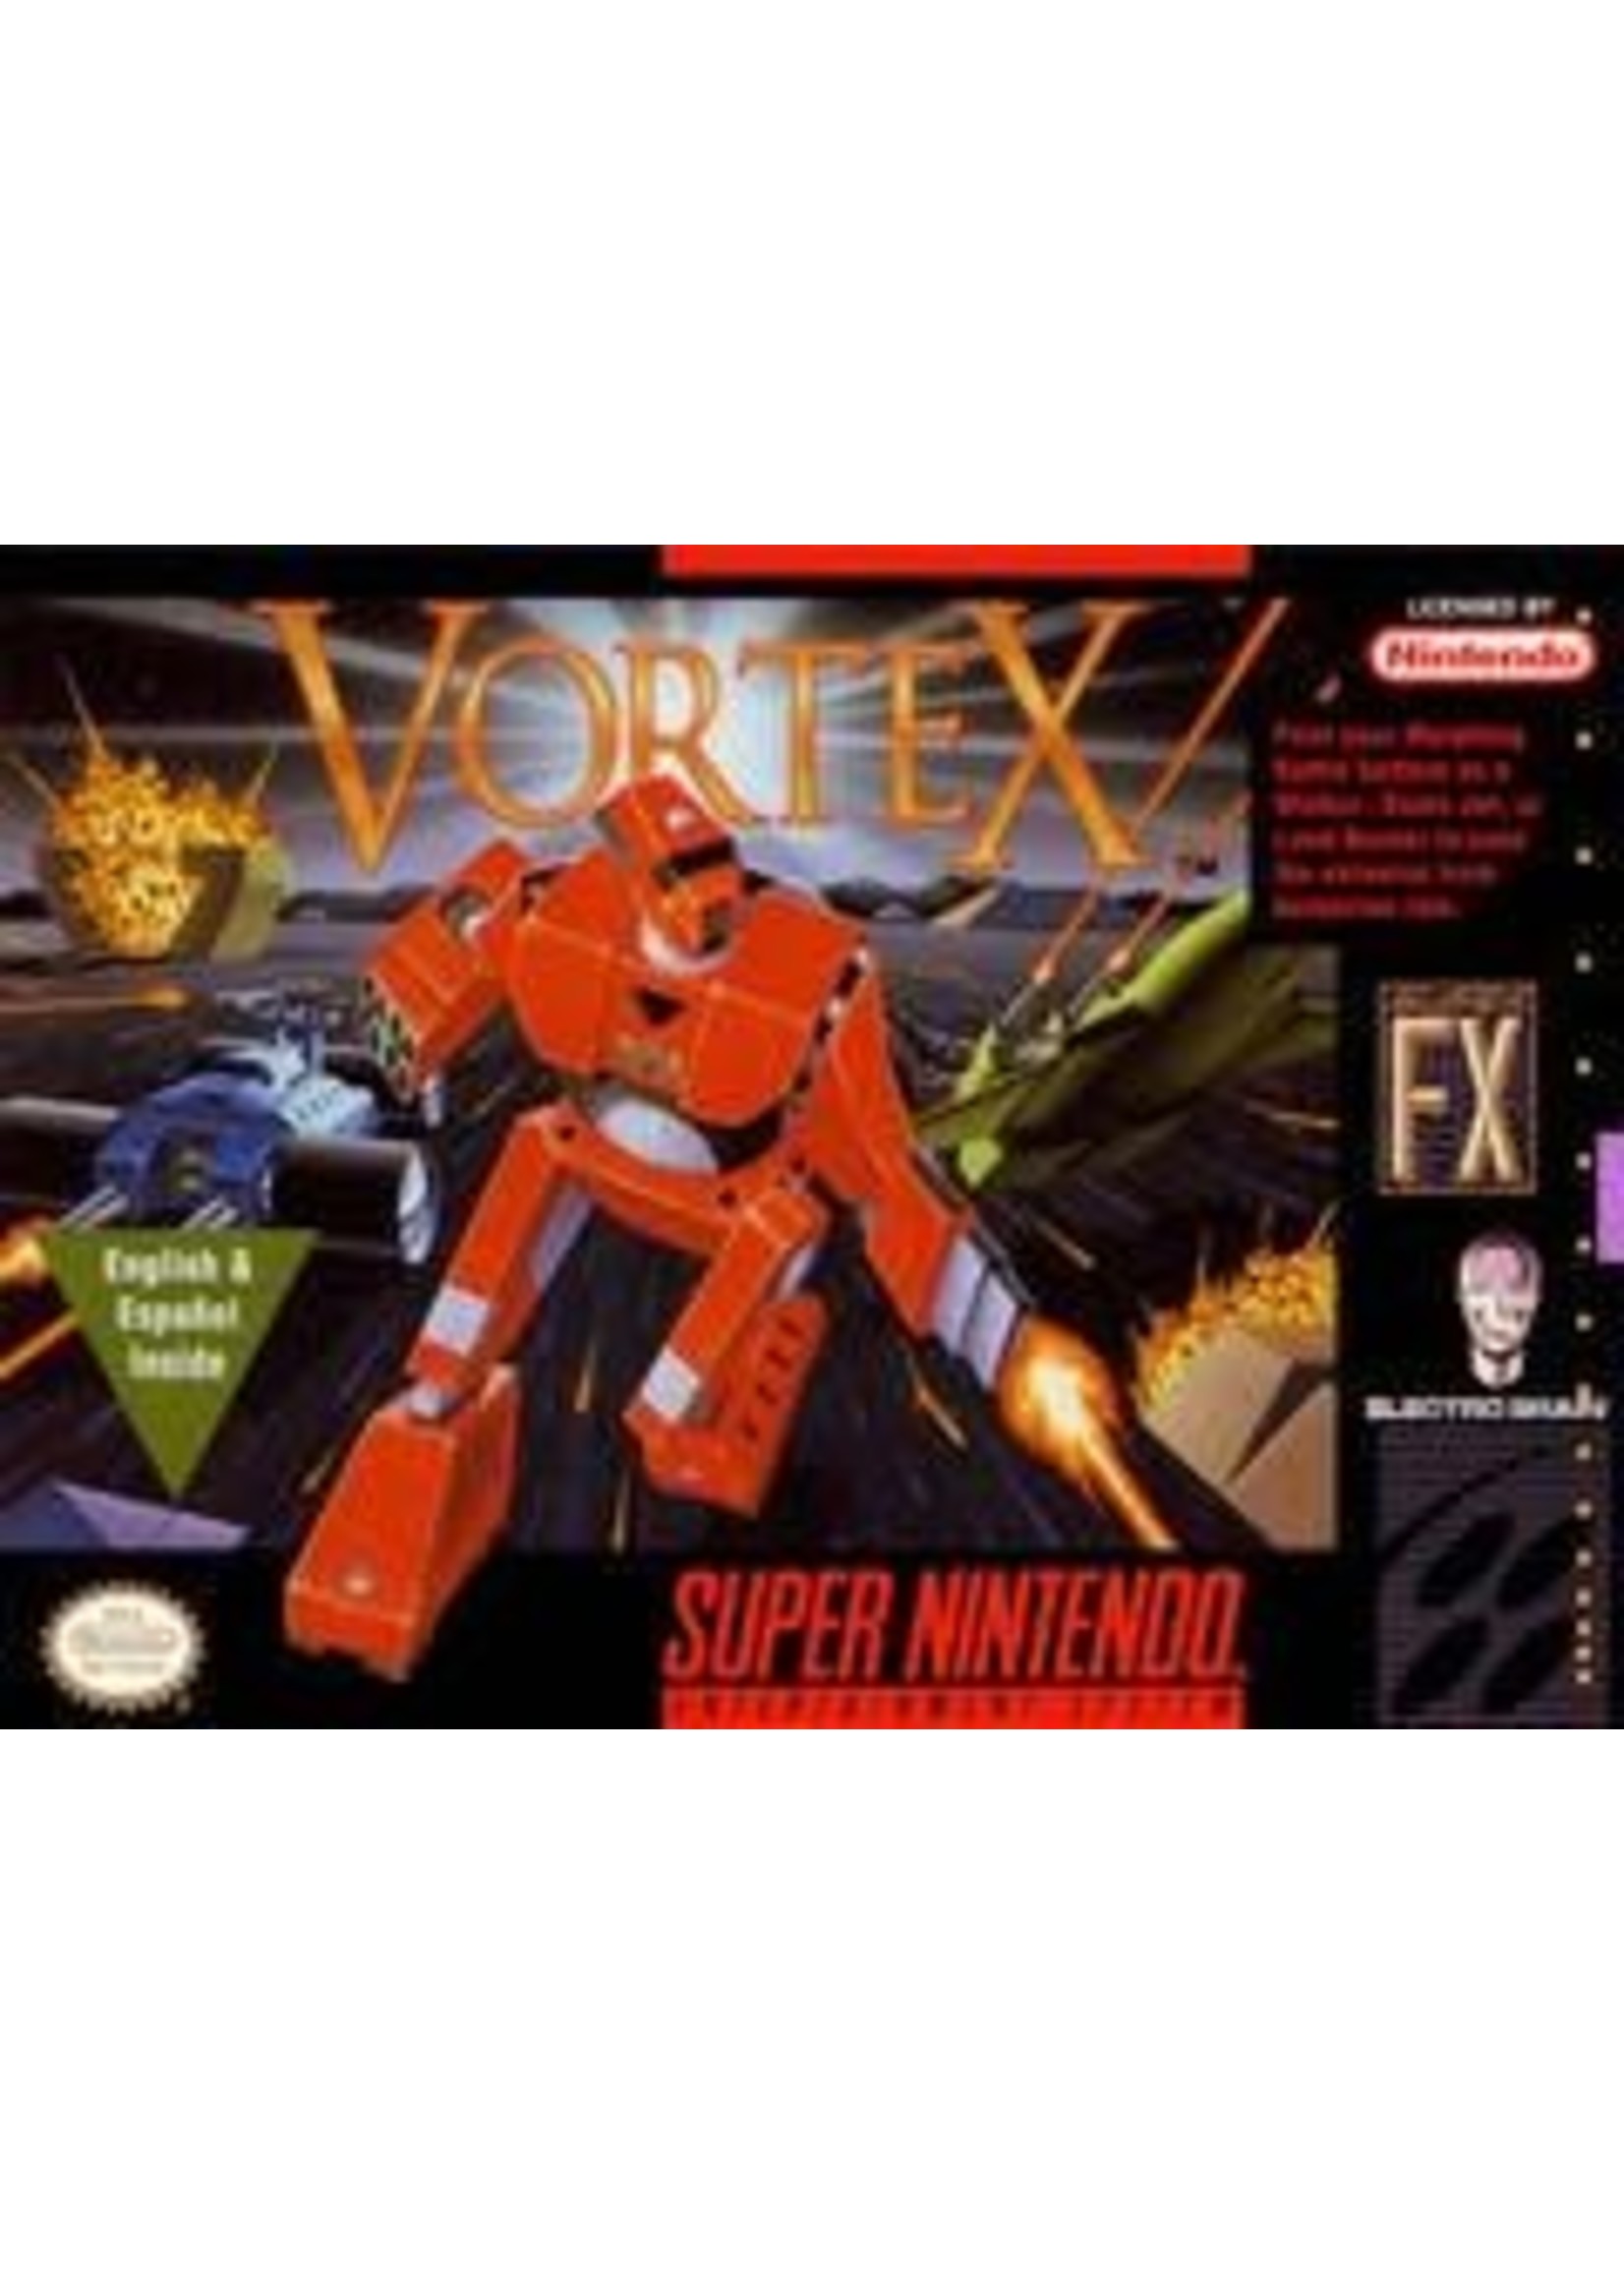 Vortex Super Nintendo CART ONLY